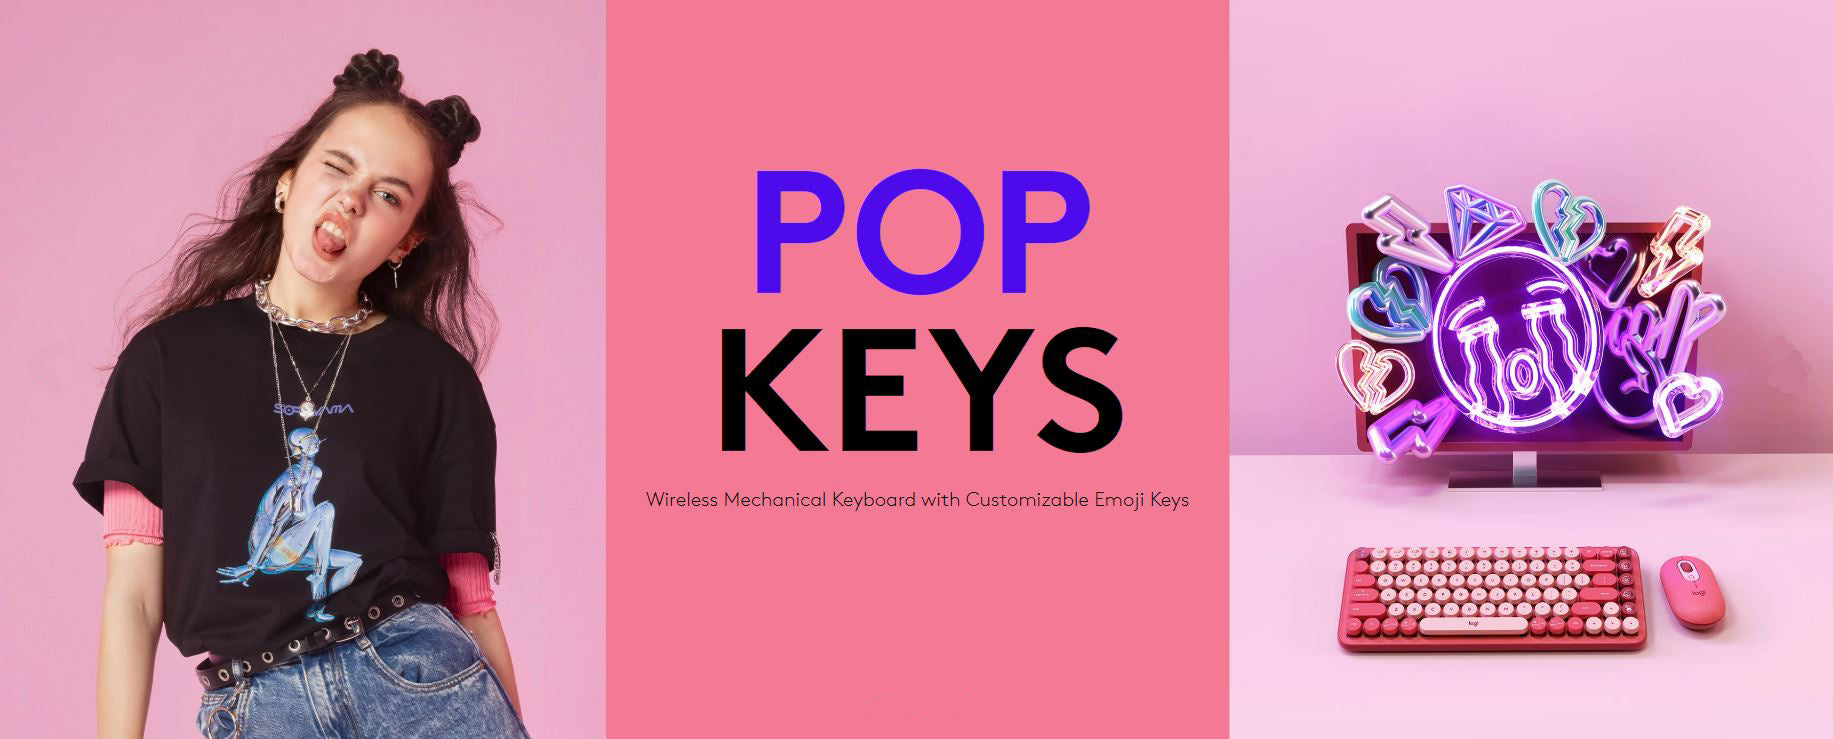 LOGITECH Pop Keys Wireless Mechanical Keyboard With Customizable Emoji Keys - GIT, KEYBOARD, LOGITECH, SALE